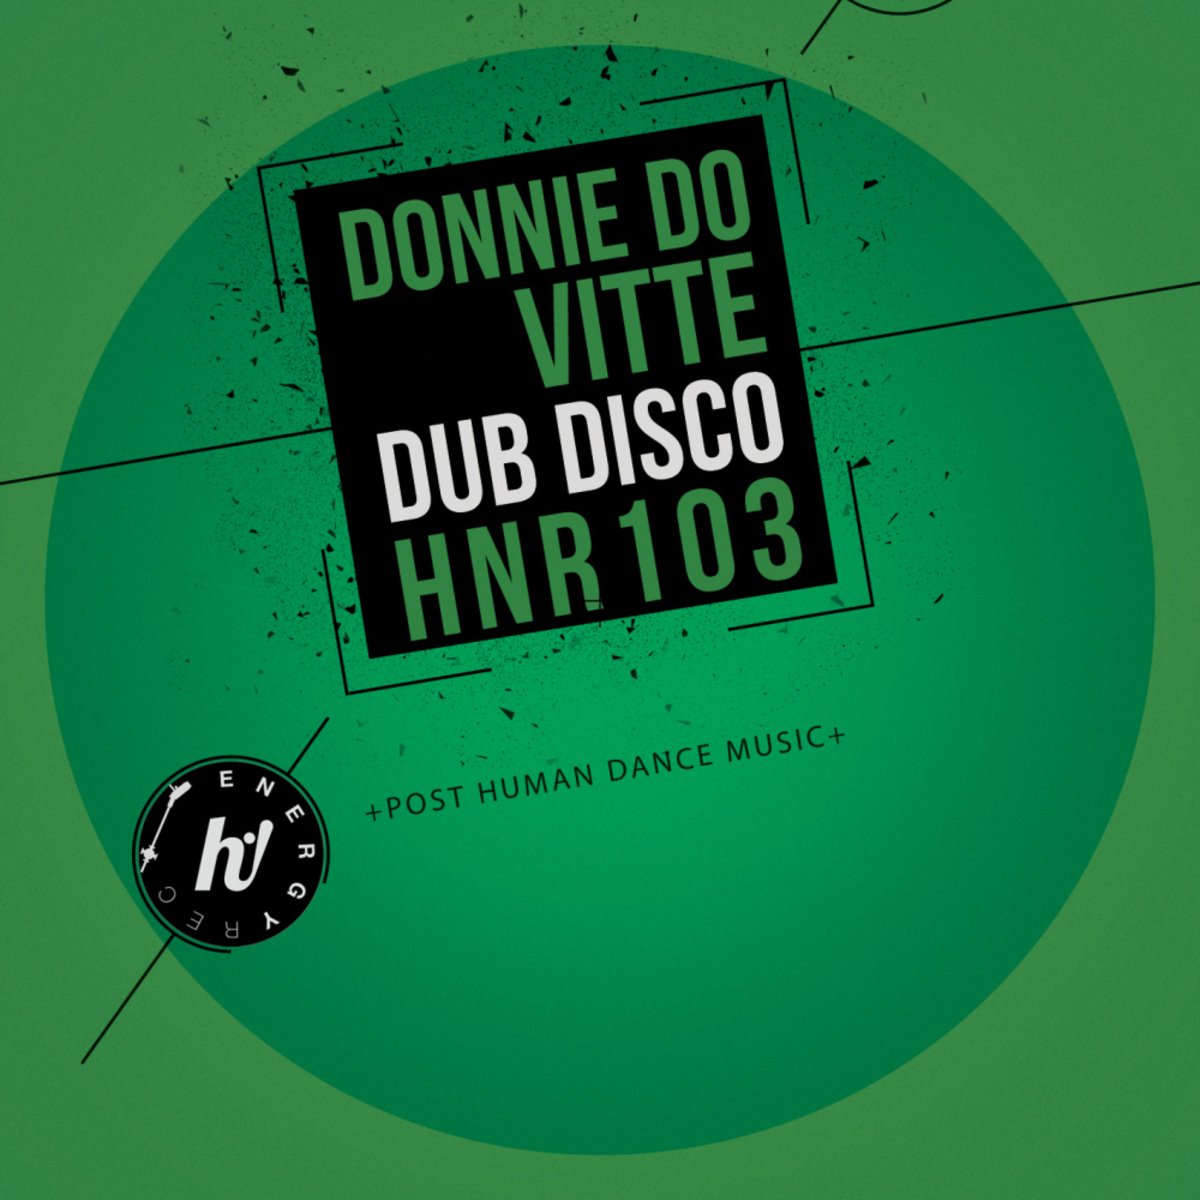 Donnie Do Vitte - Dub Disco / Hi! Energy Records